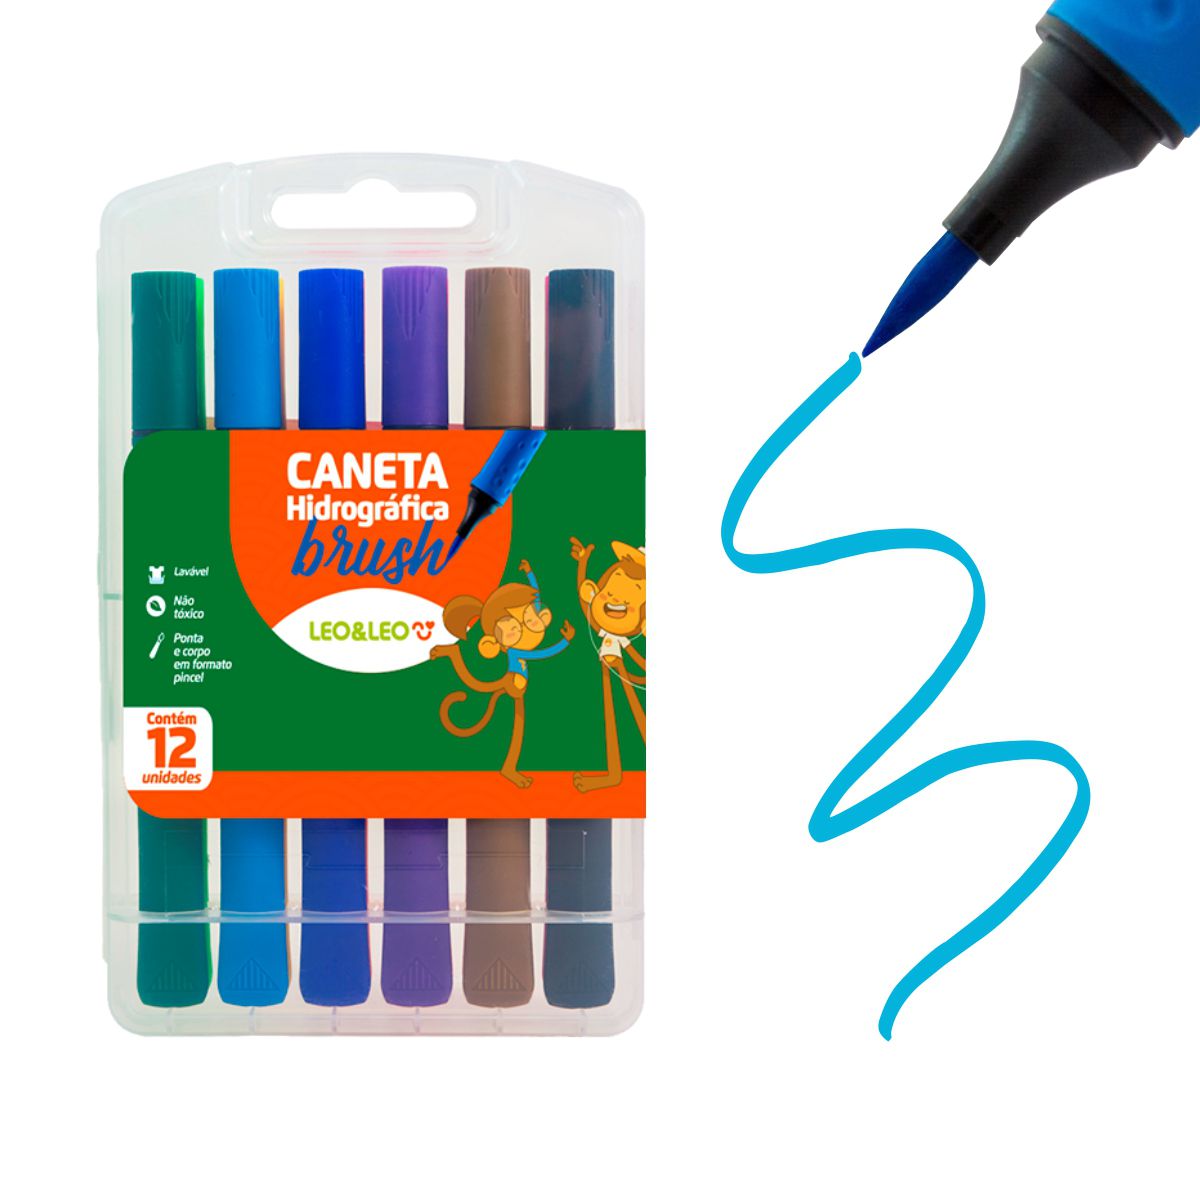 Estojo Com 12 Canetas Brush Pen Hidrográfica - Ponta Pincel - Glitter Clube  - Papelaria, Brindes & Lembrancinhas